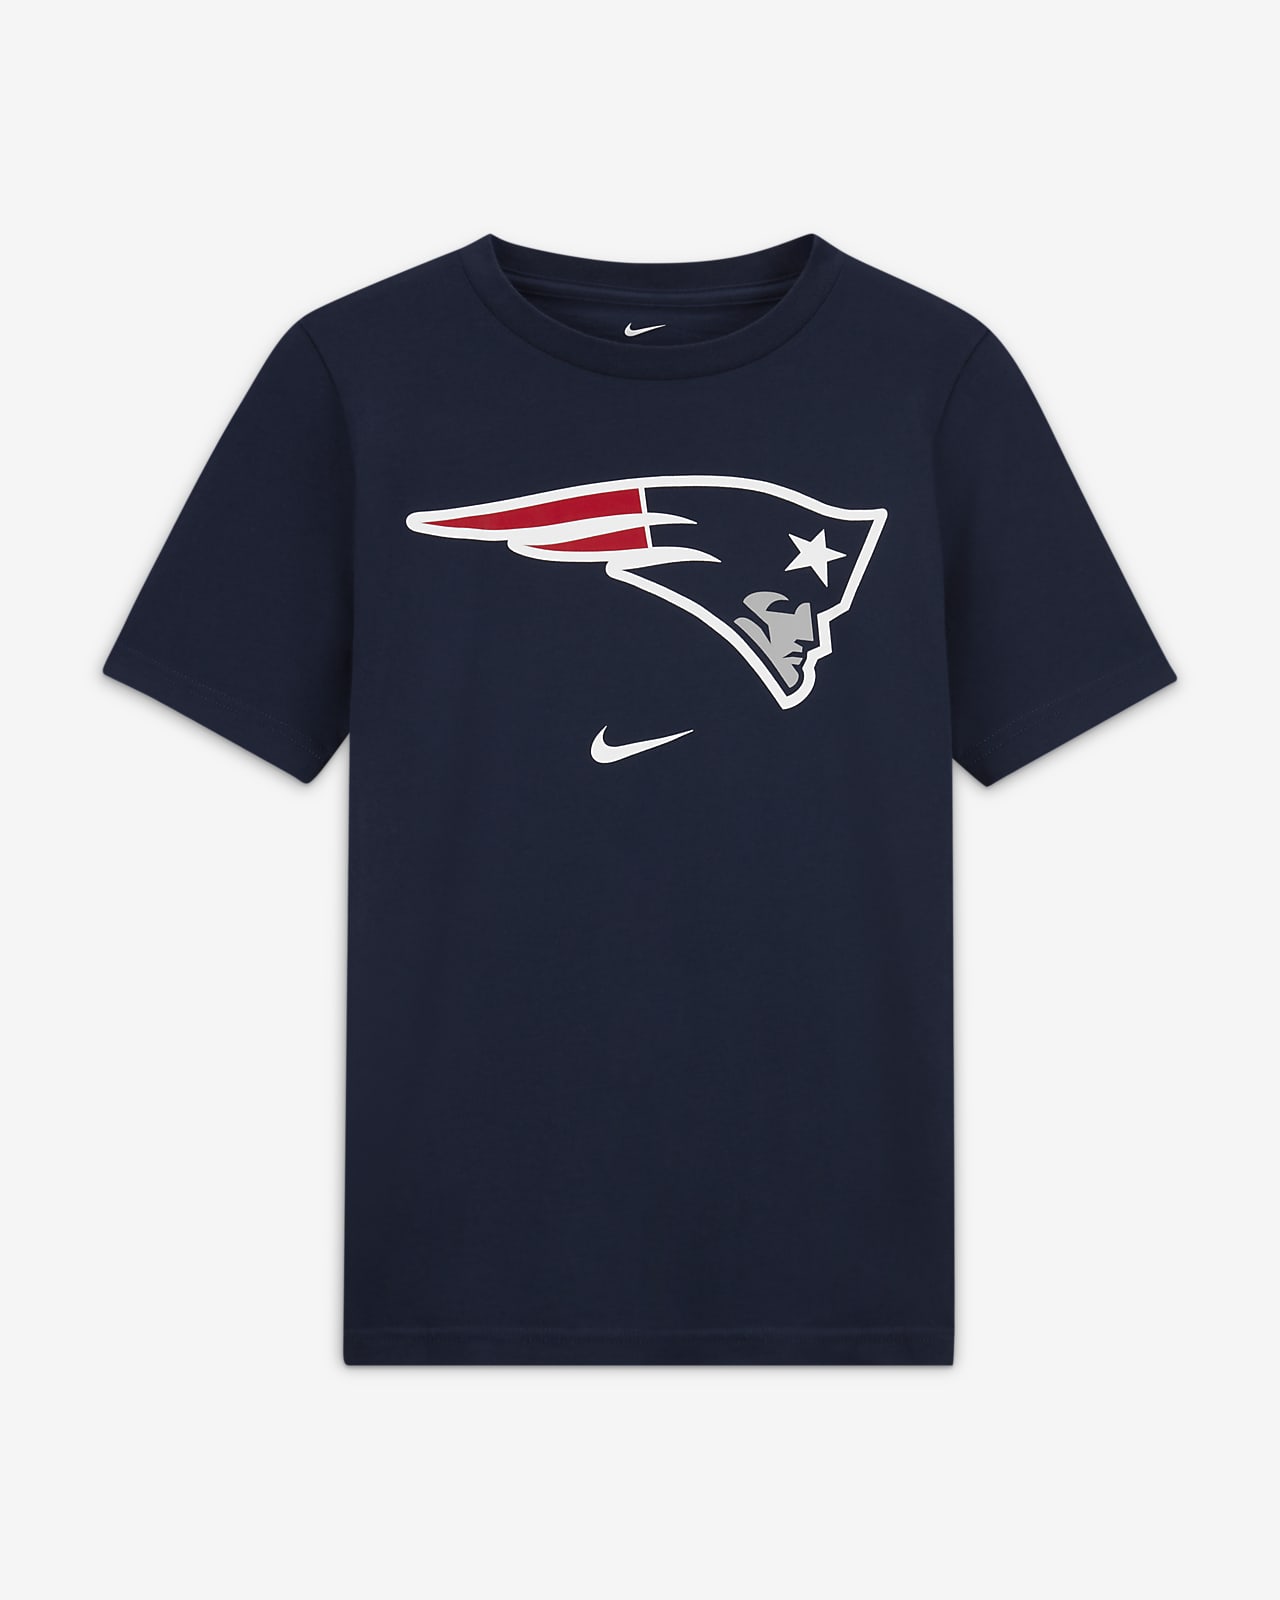 T-shirt Nike (NFL New England Patriots) – Ragazzo/a